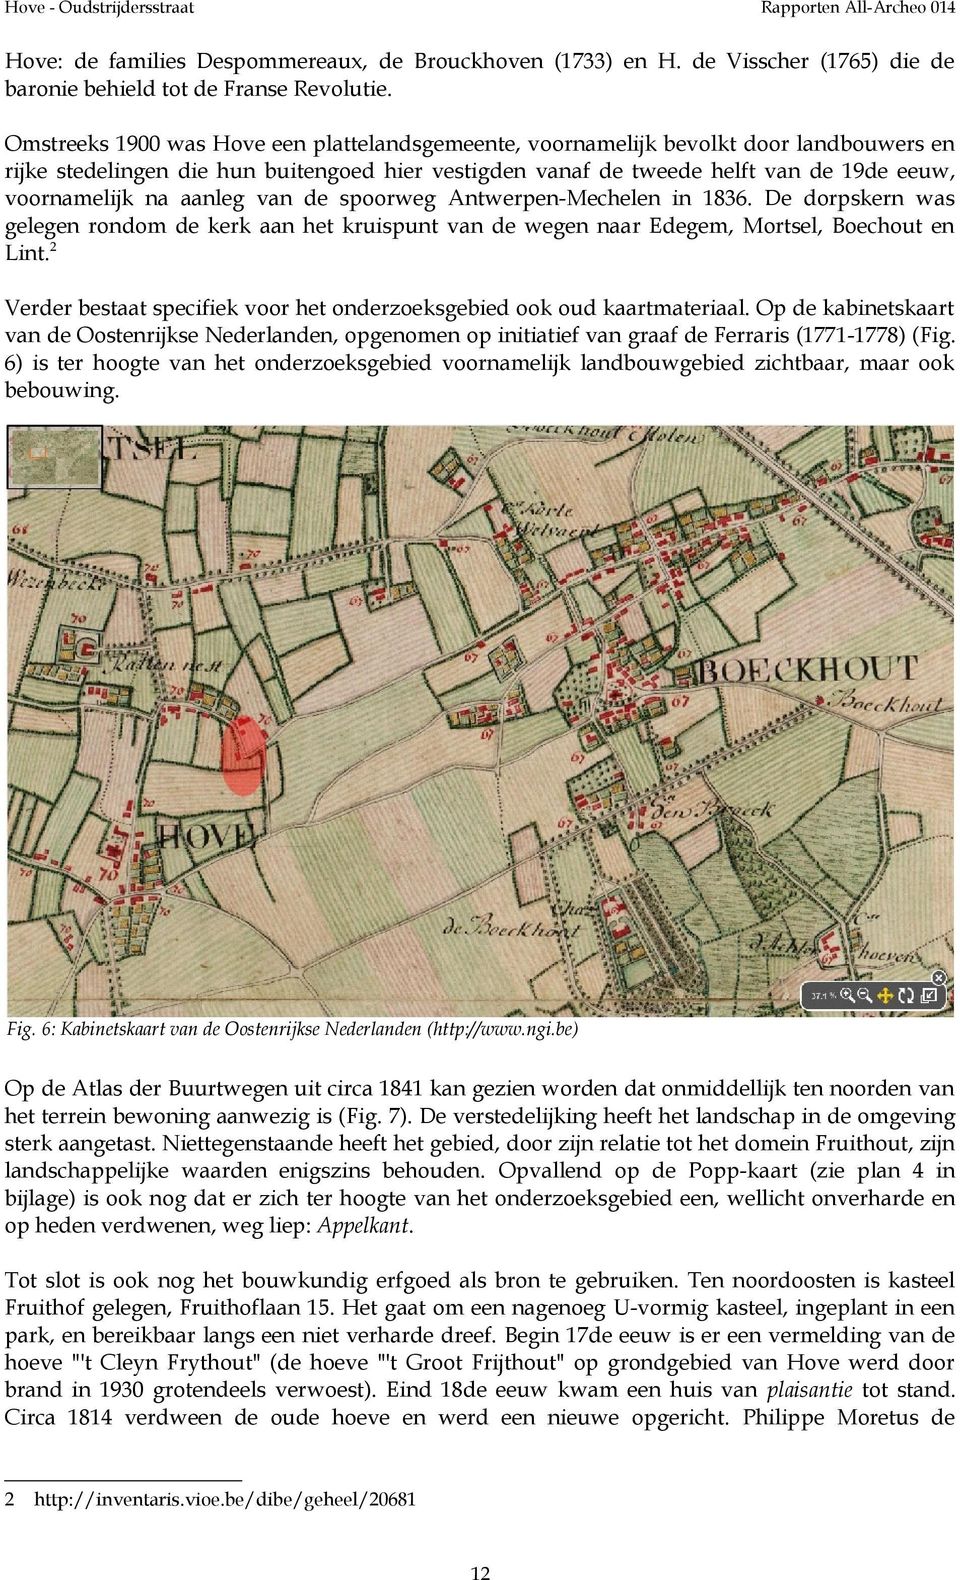 aanleg van de spoorweg Antwerpen-Mechelen in 1836. De dorpskern was gelegen rondom de kerk aan het kruispunt van de wegen naar Edegem, Mortsel, Boechout en Lint.